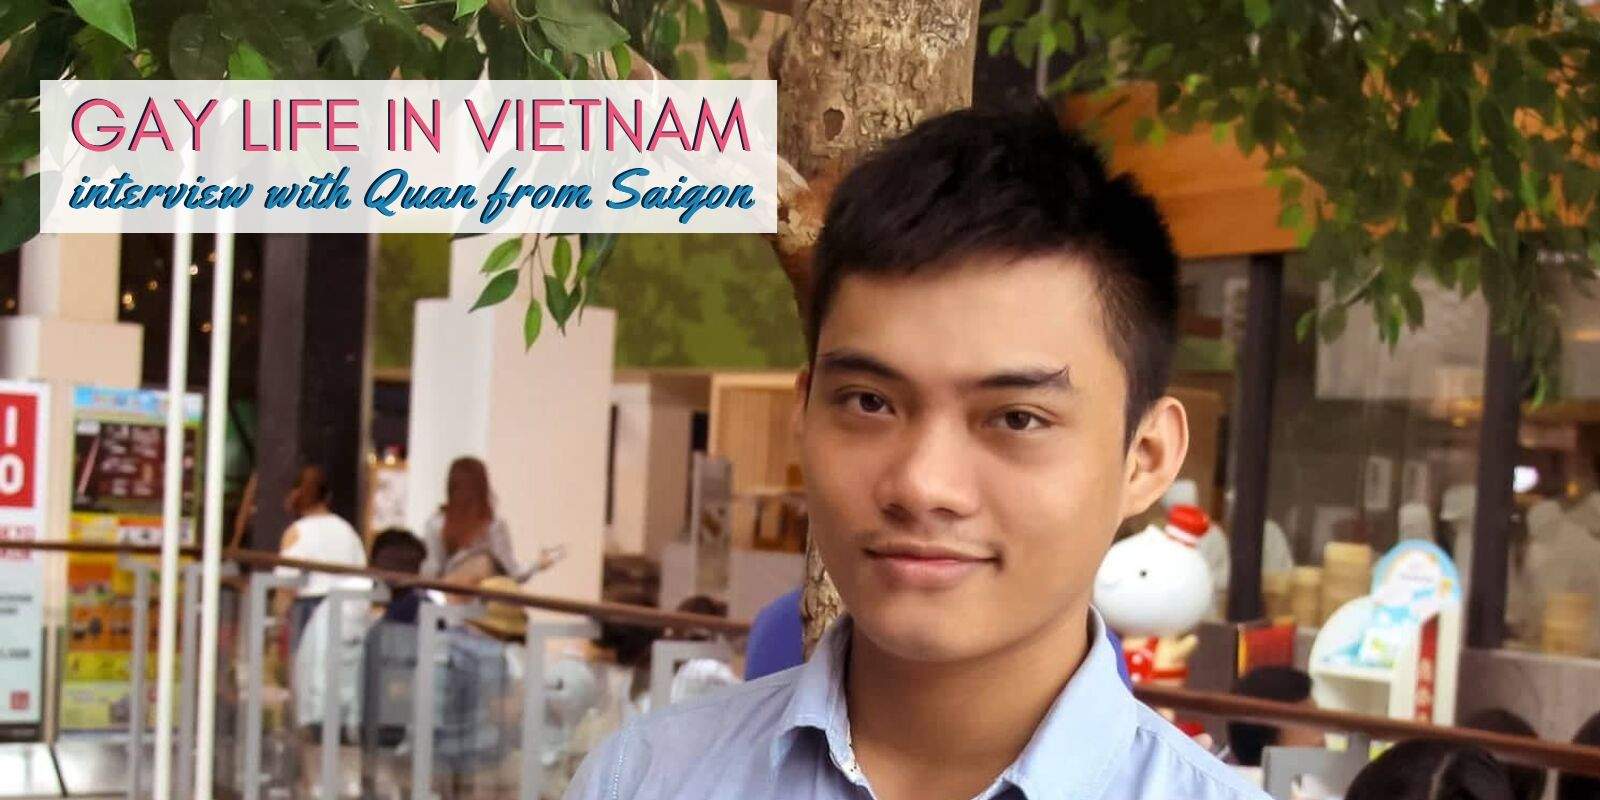 Descubra como é crescer gay no Vietnã em nossa entrevista com Quan de Saigon